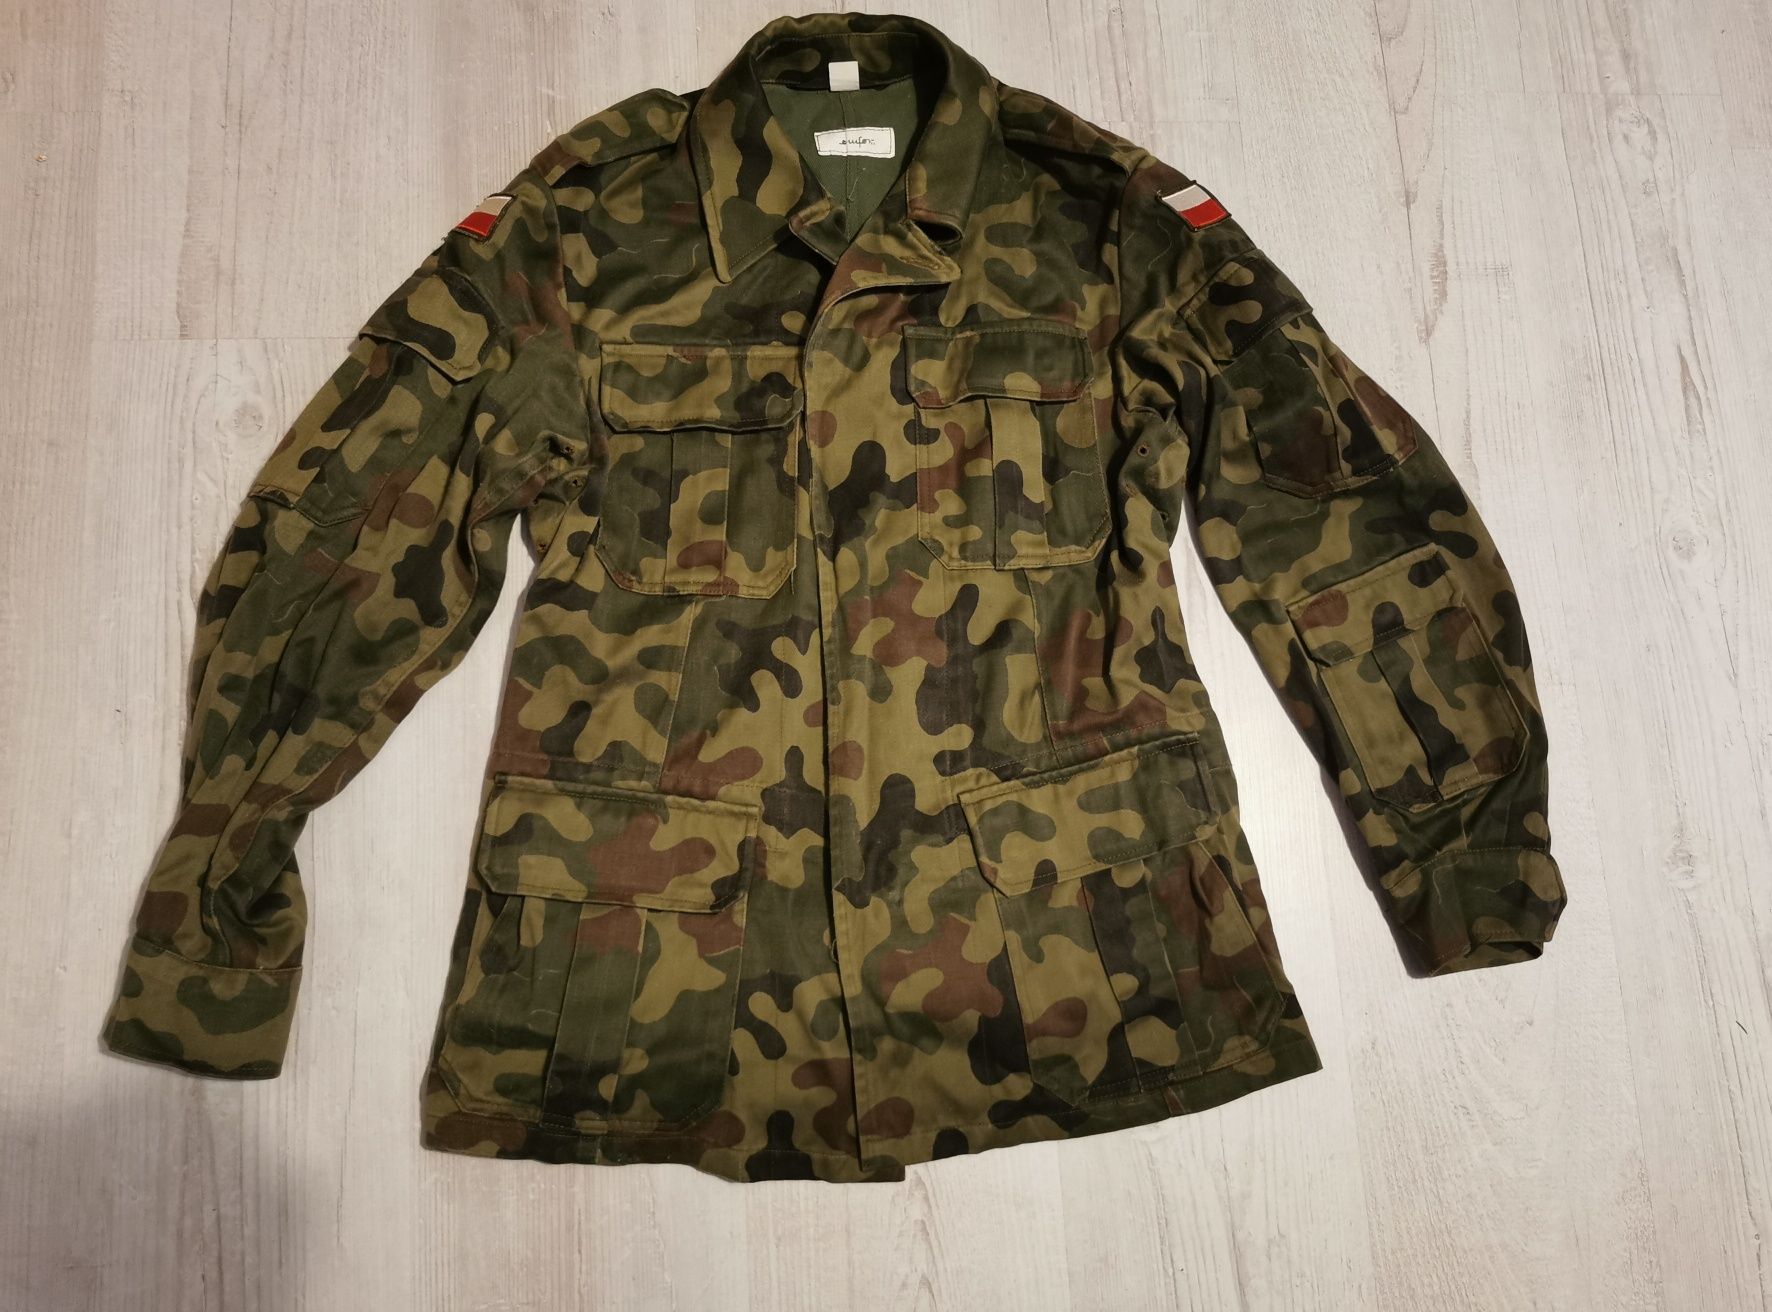 Bluza mundurowa całoroczna Wz93 127/MON Pantera